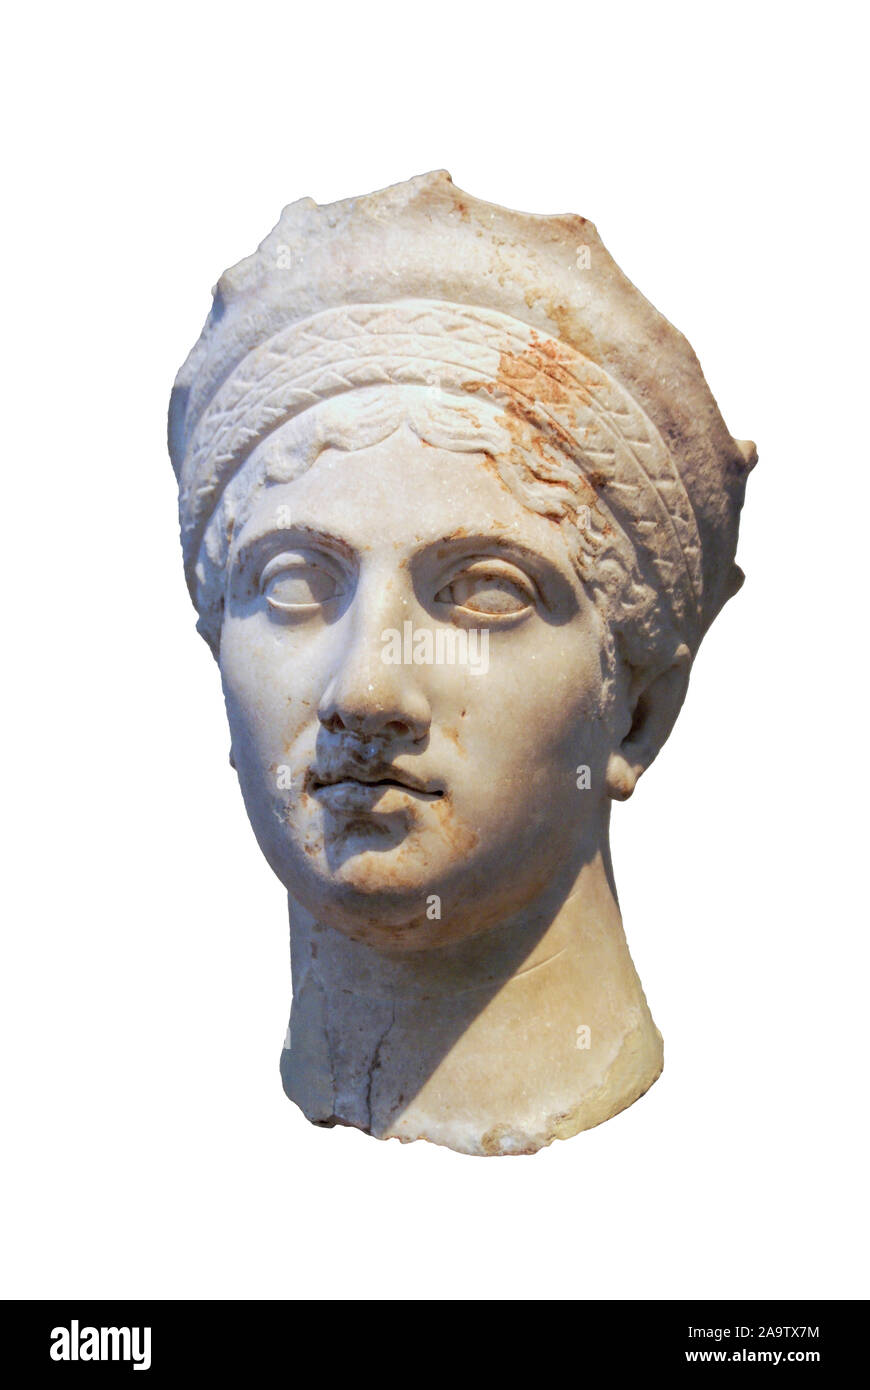 Antike römische Büste einer Frau, aus Kreta, eventuell Plotina, Frau Trajan - Nationalen Archäologischen Museum, Athen, Griechenland Stockfoto